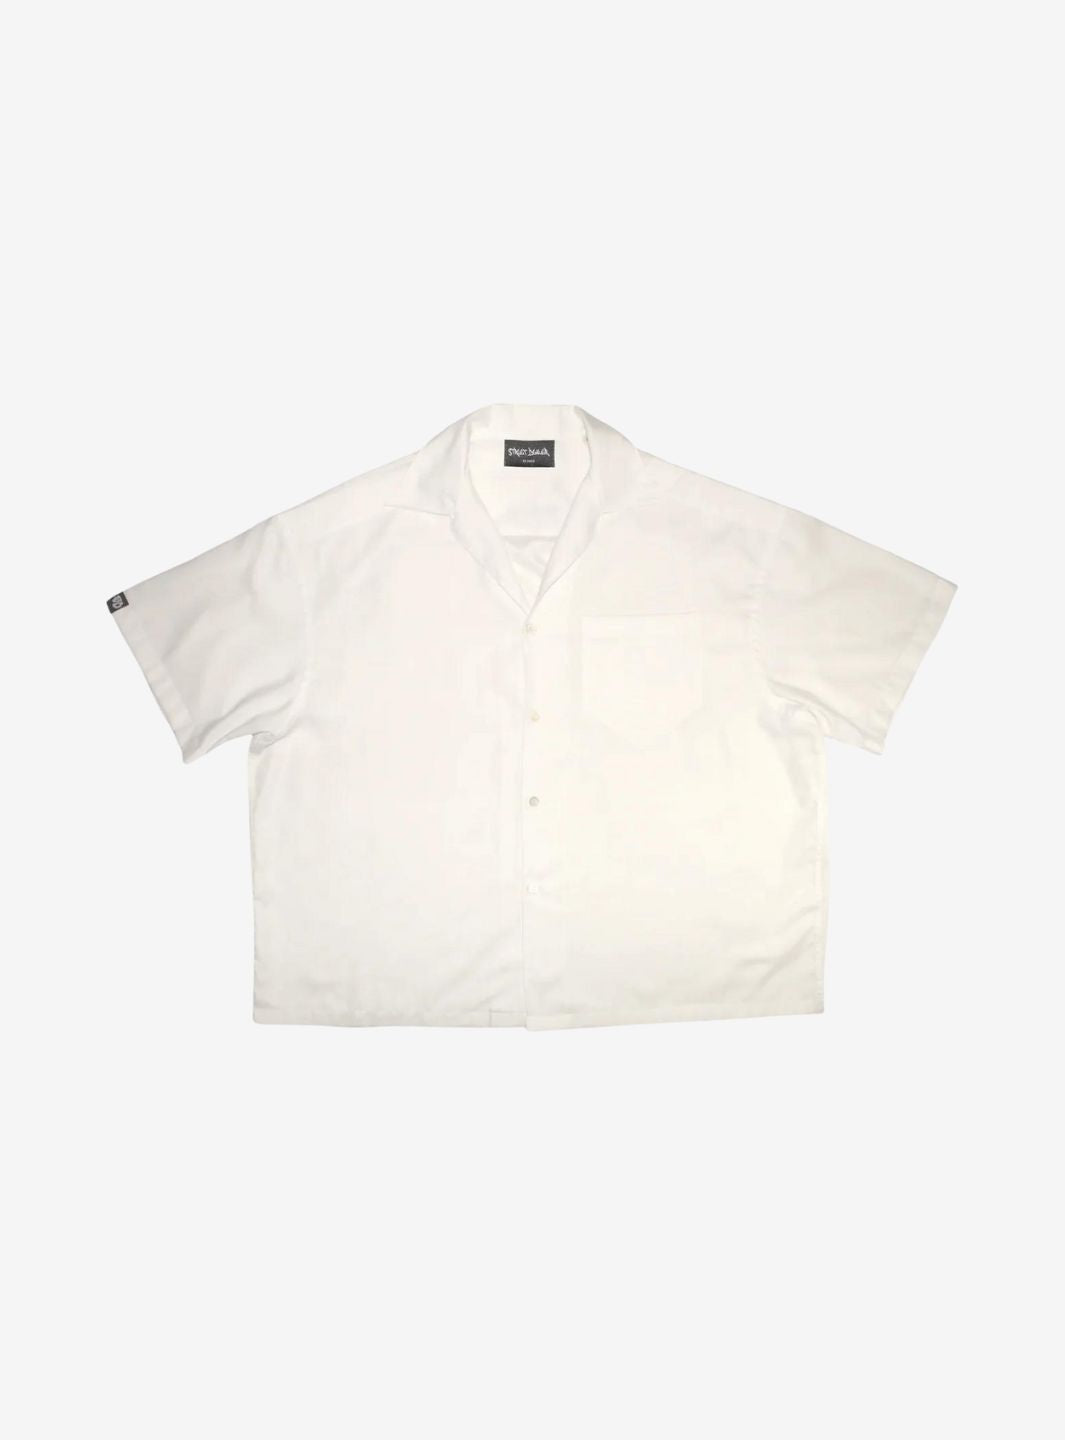 Street Dealer Oversize Shirt White